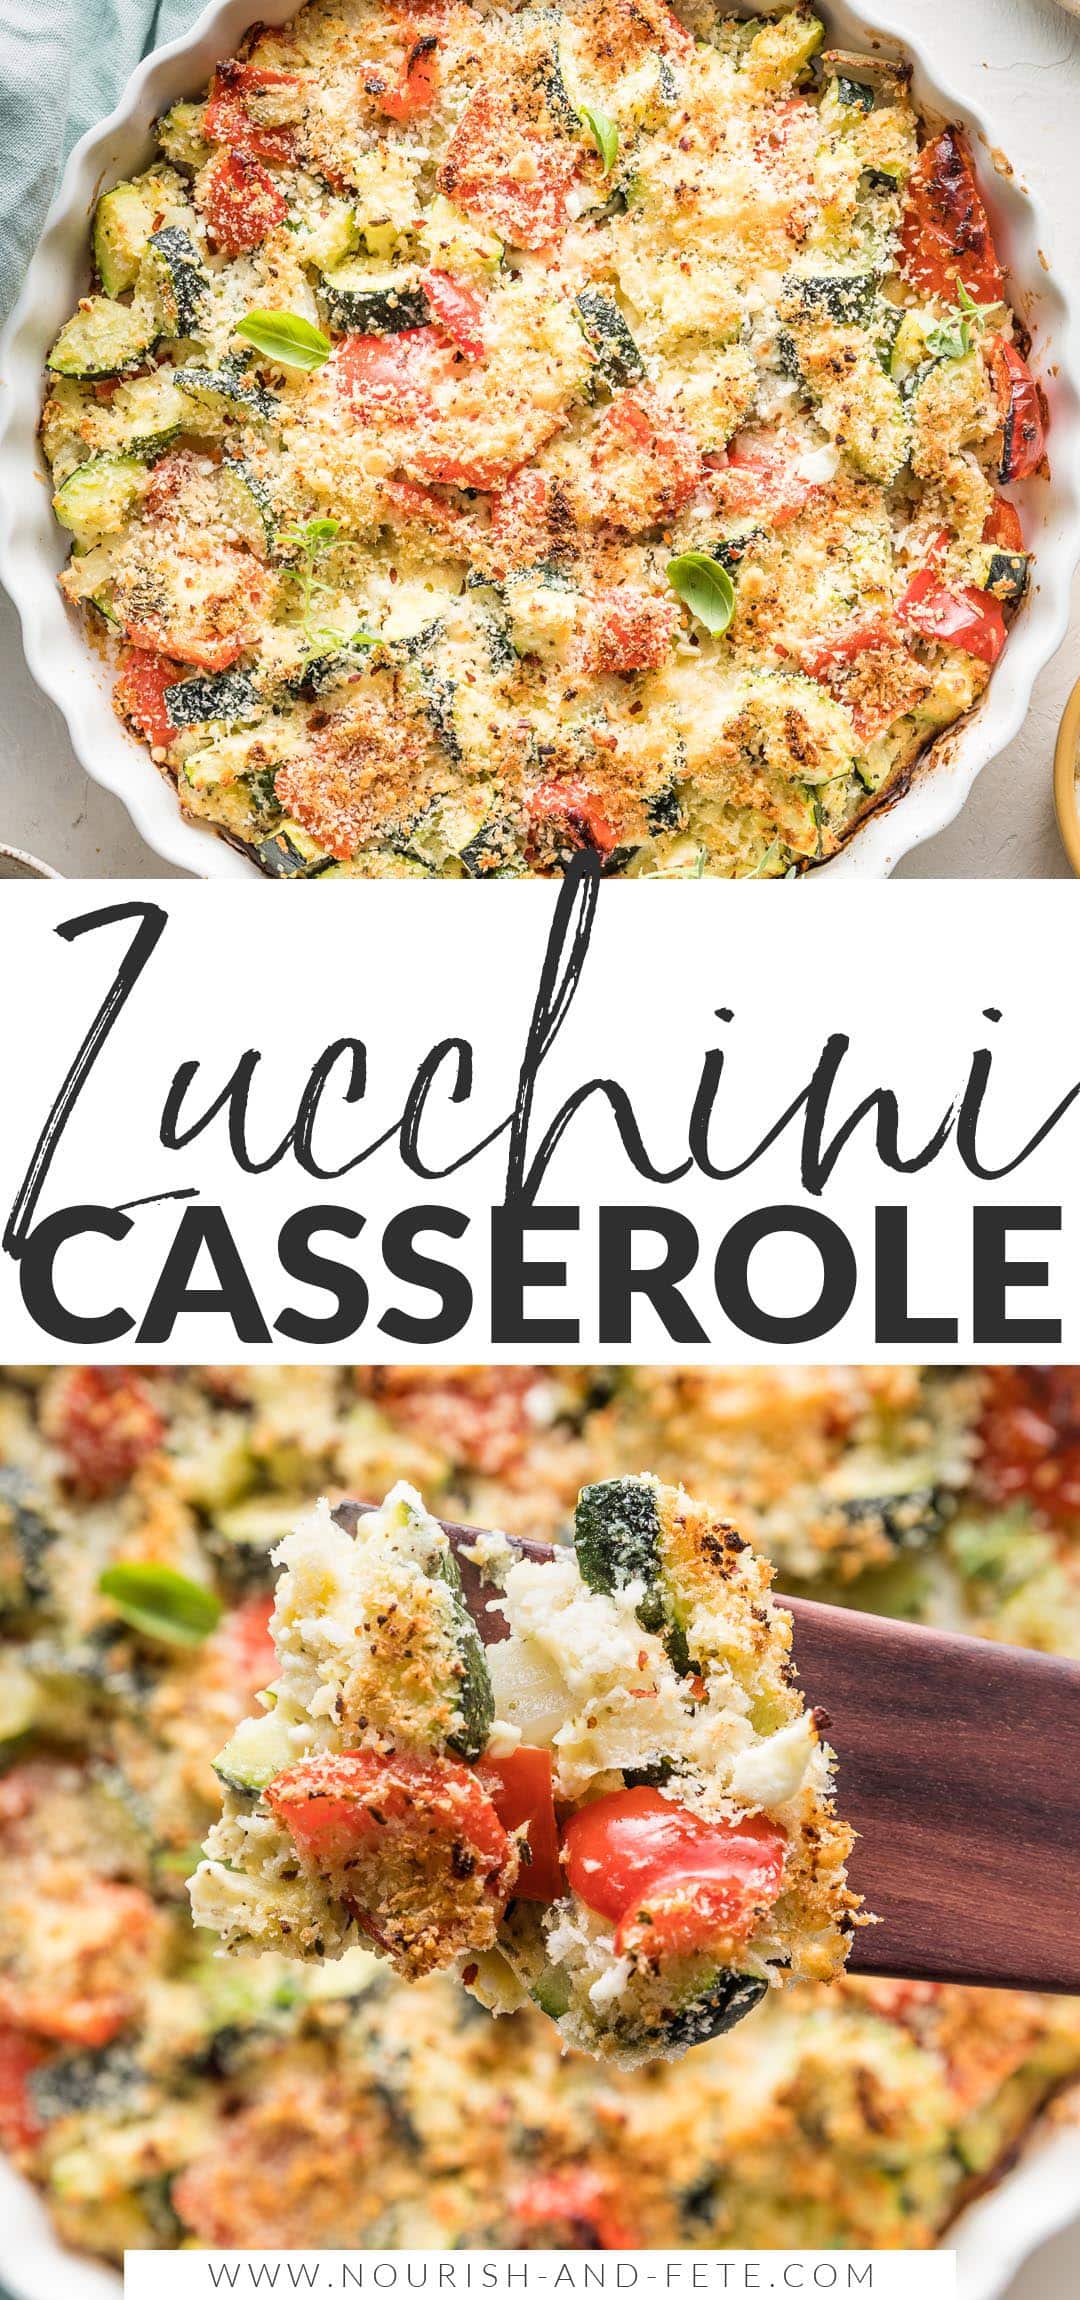 Easy Zucchini Casserole with Feta - Nourish and Fete